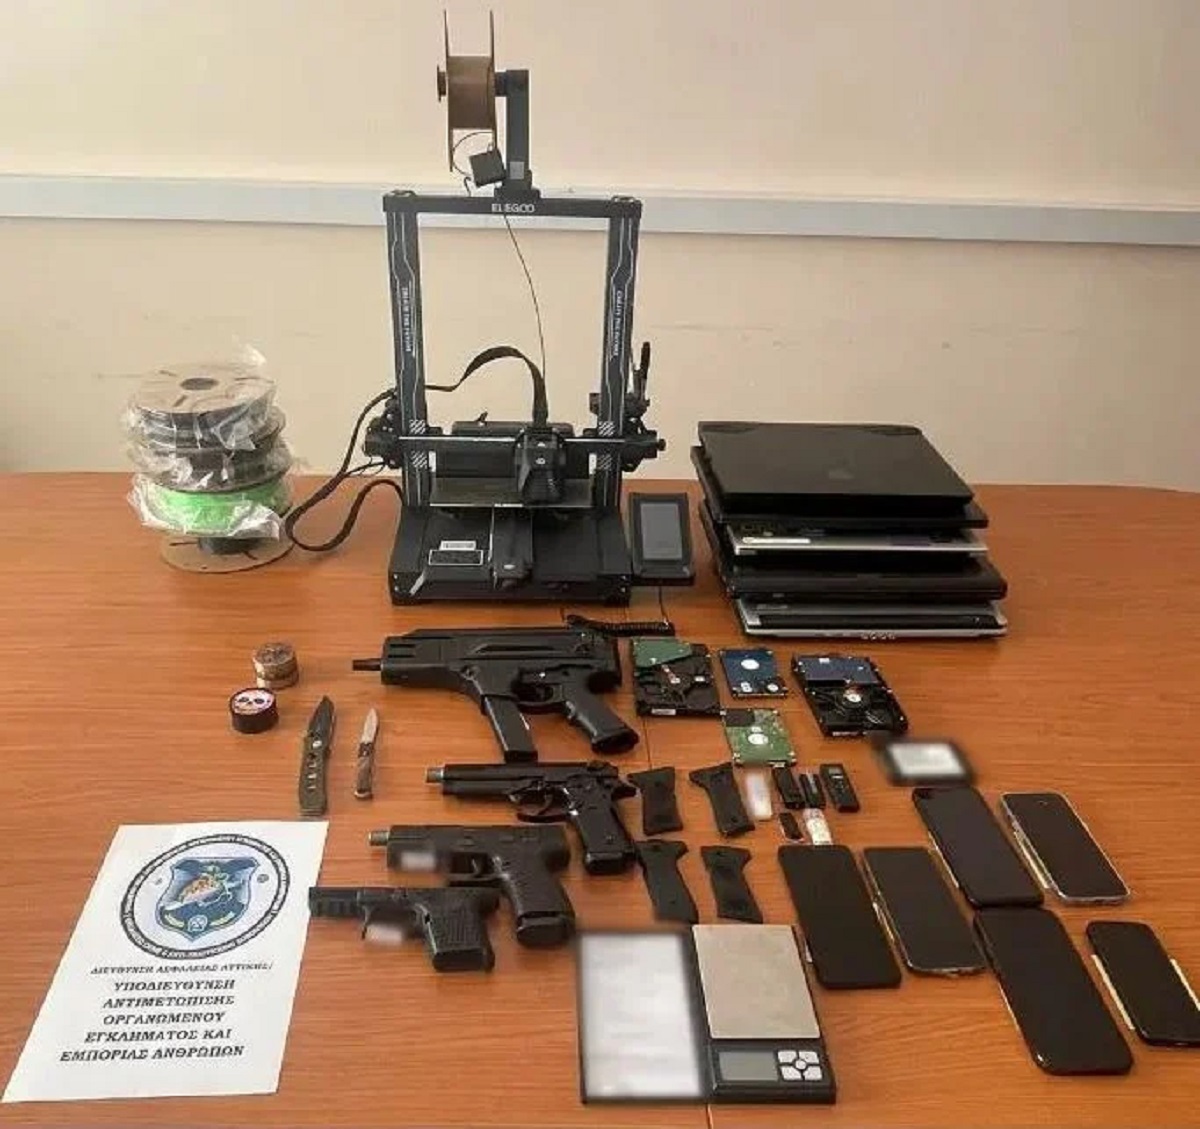 Σάμος: Ελεύθεροι οι συλληφθέντες για την κατασκευή όπλων με τρισδιάστατο εκτυπωτή